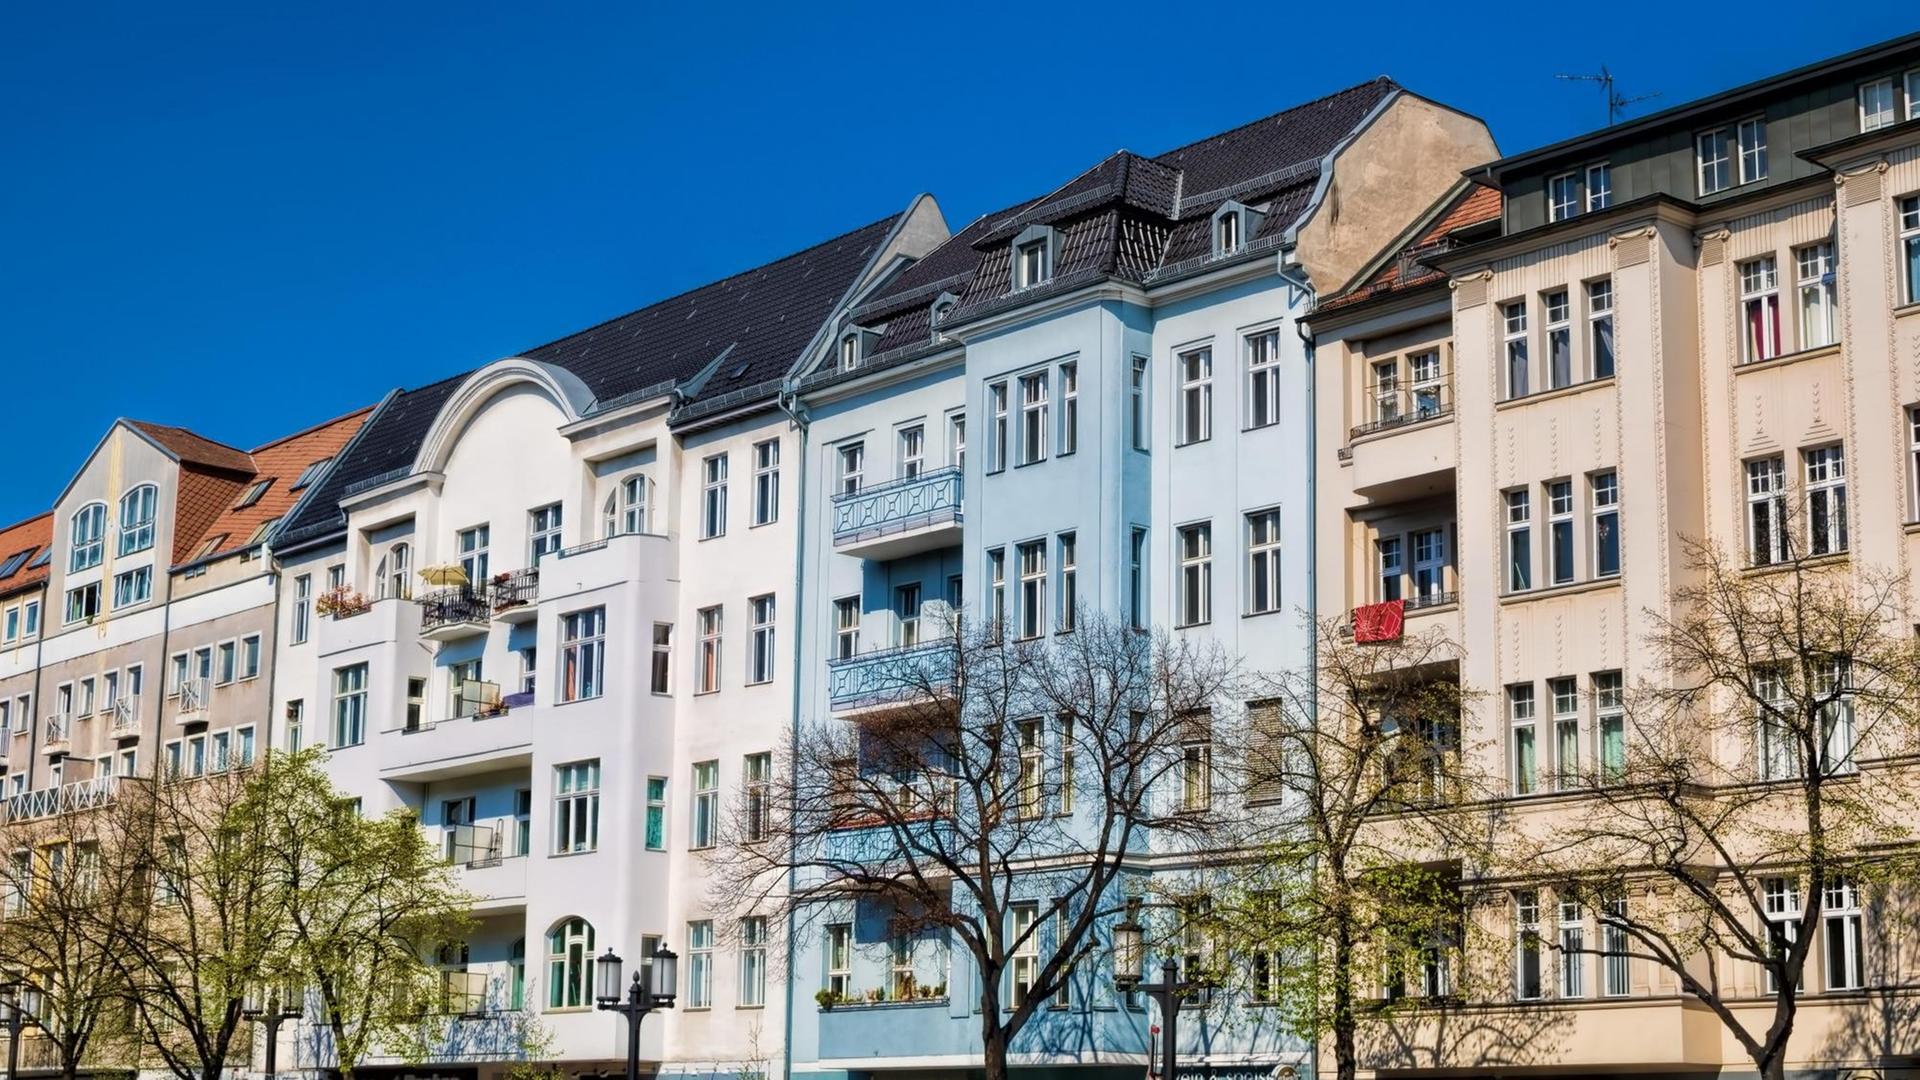 Mehrere sanierte Altbau-Mehrfamilienhäuser in Berlin-Charlottenburg